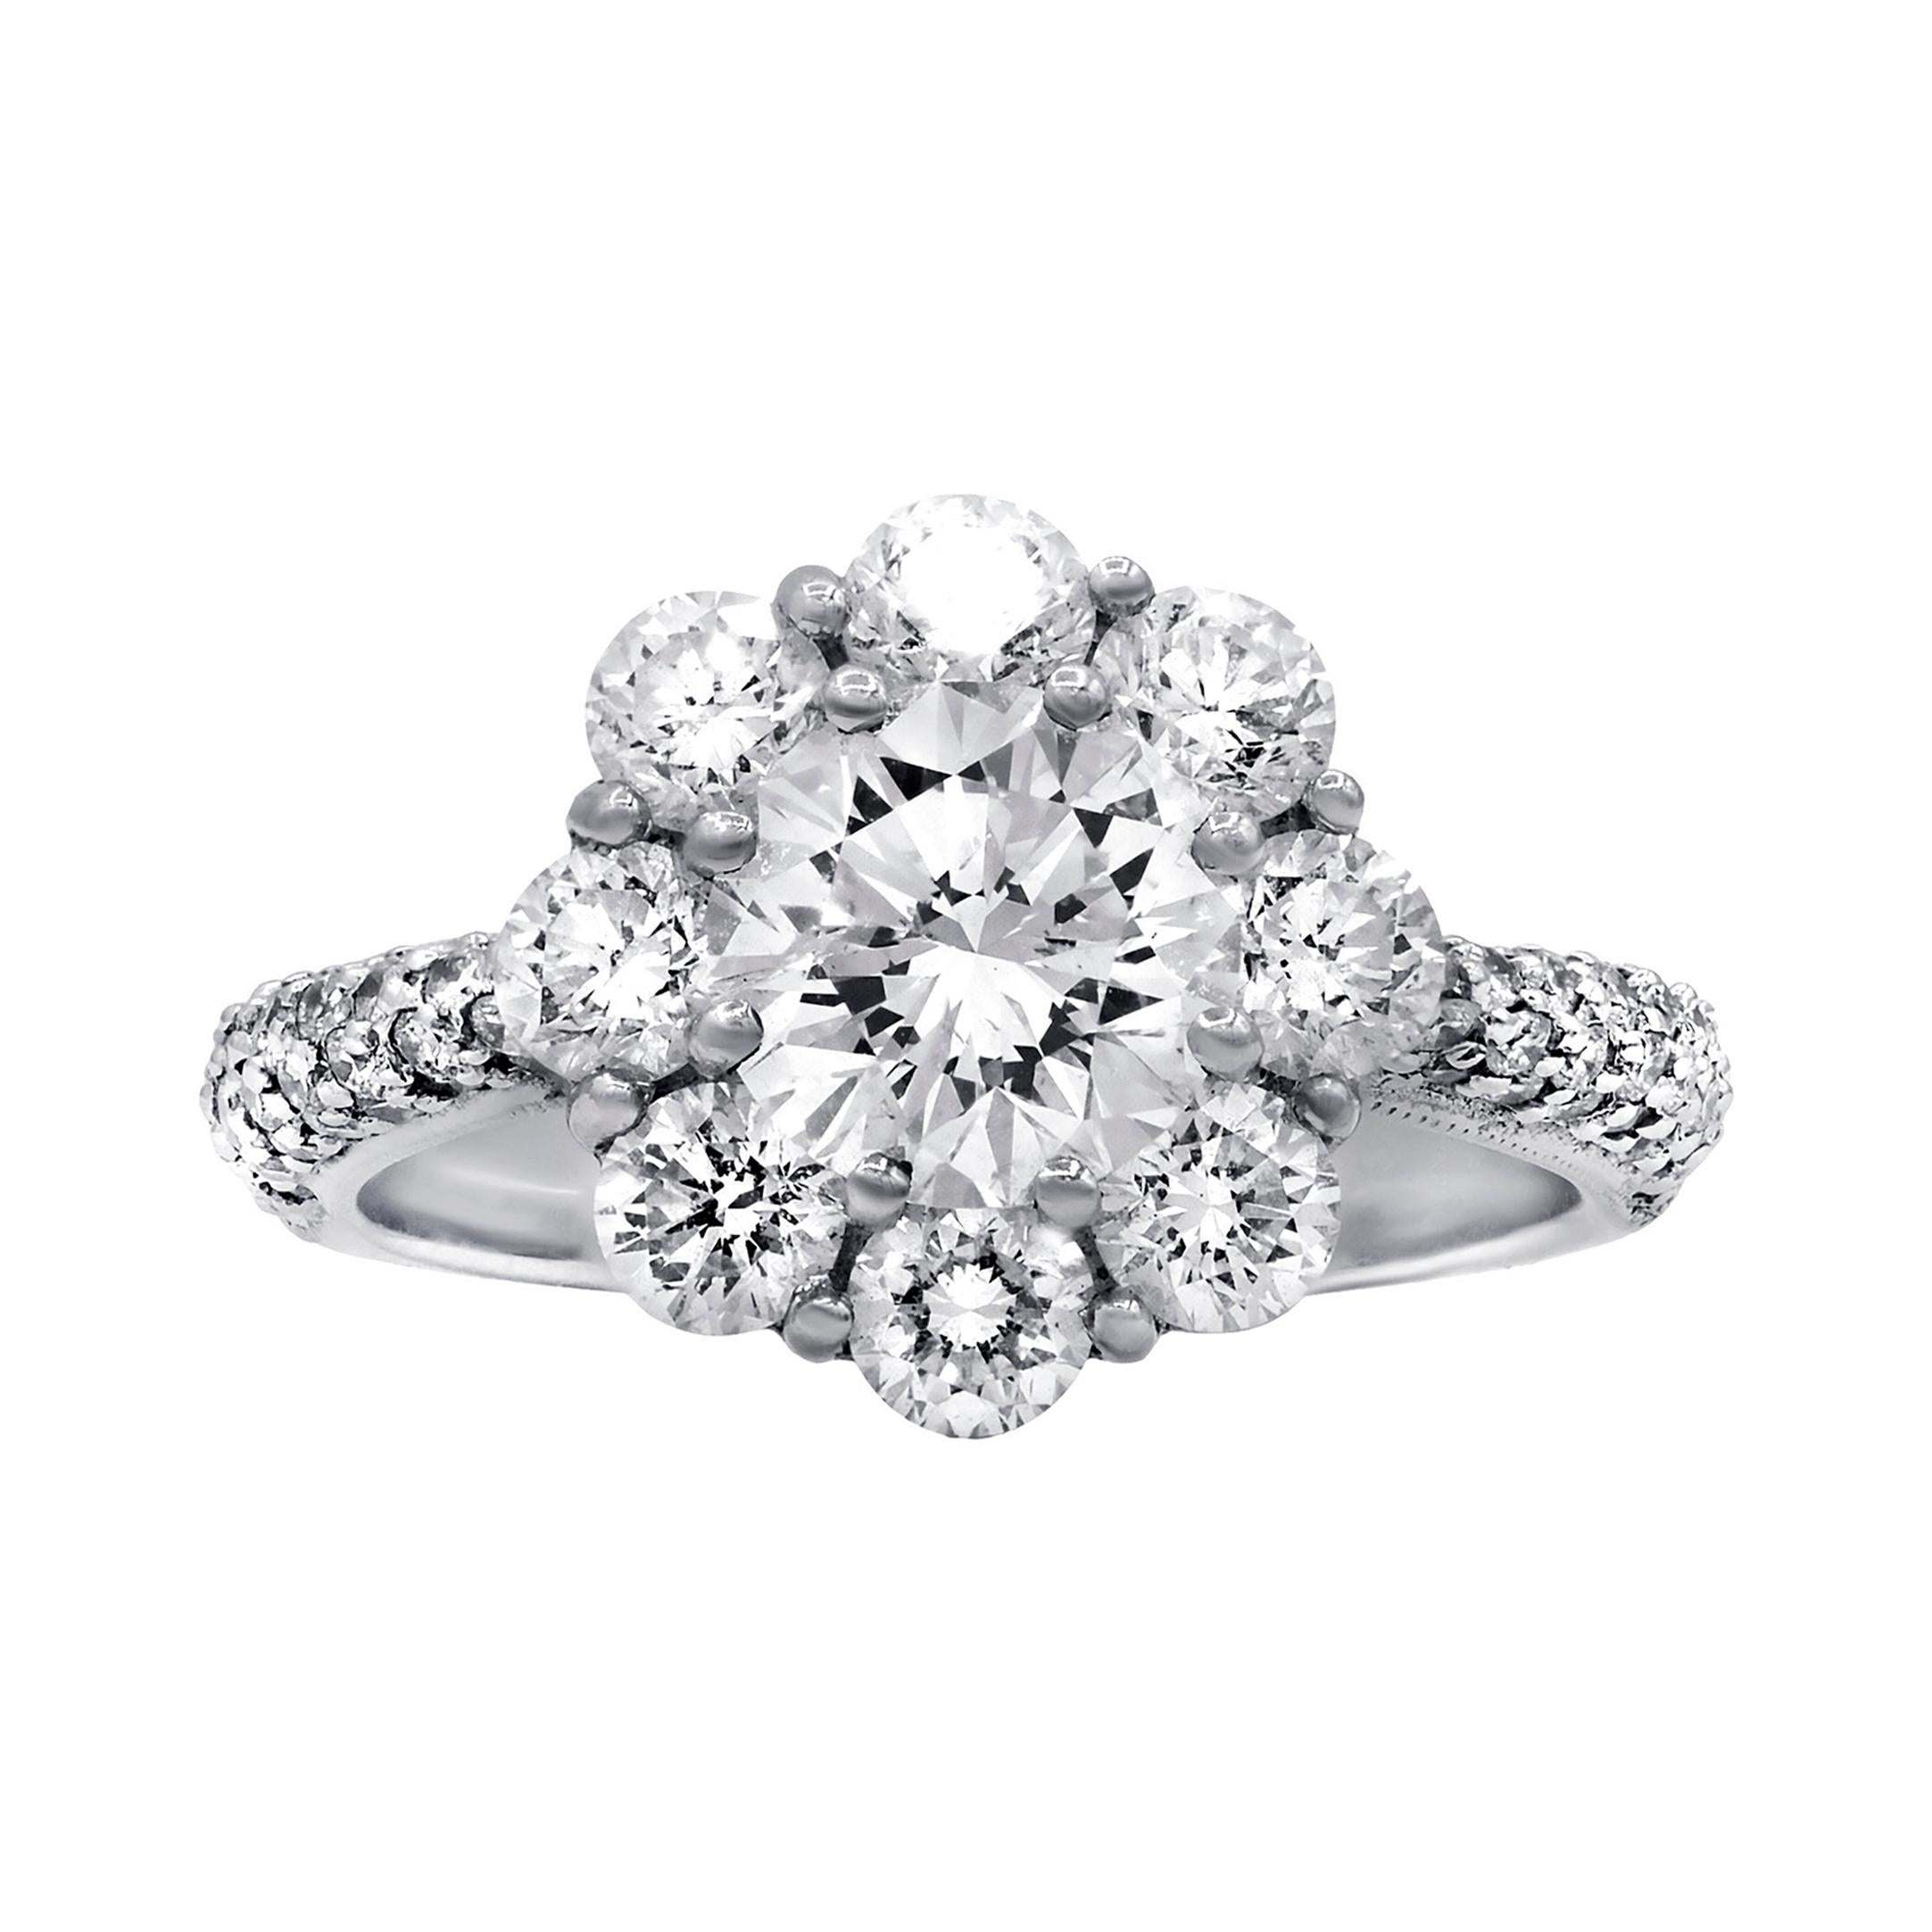 18 Karat White Gold 3.25 Carat Diamond Engagement Ring